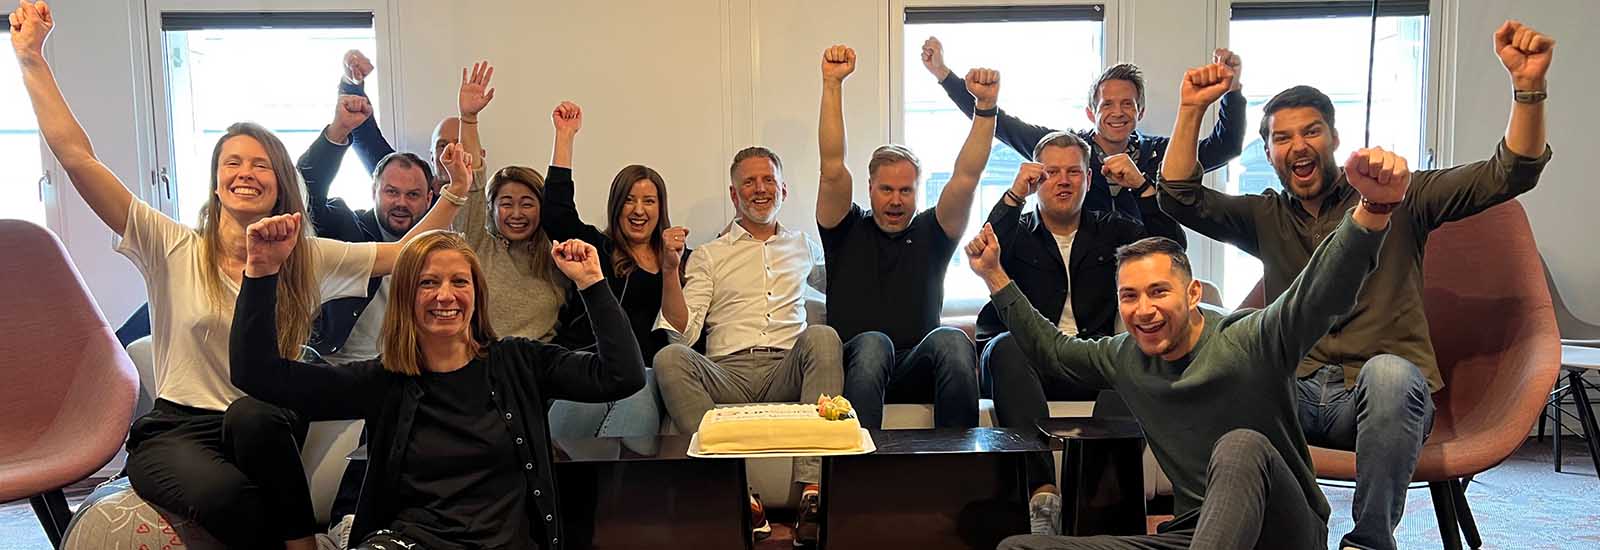 Team Lipscore celebrates NOK 1 million in monthly recurring revenue